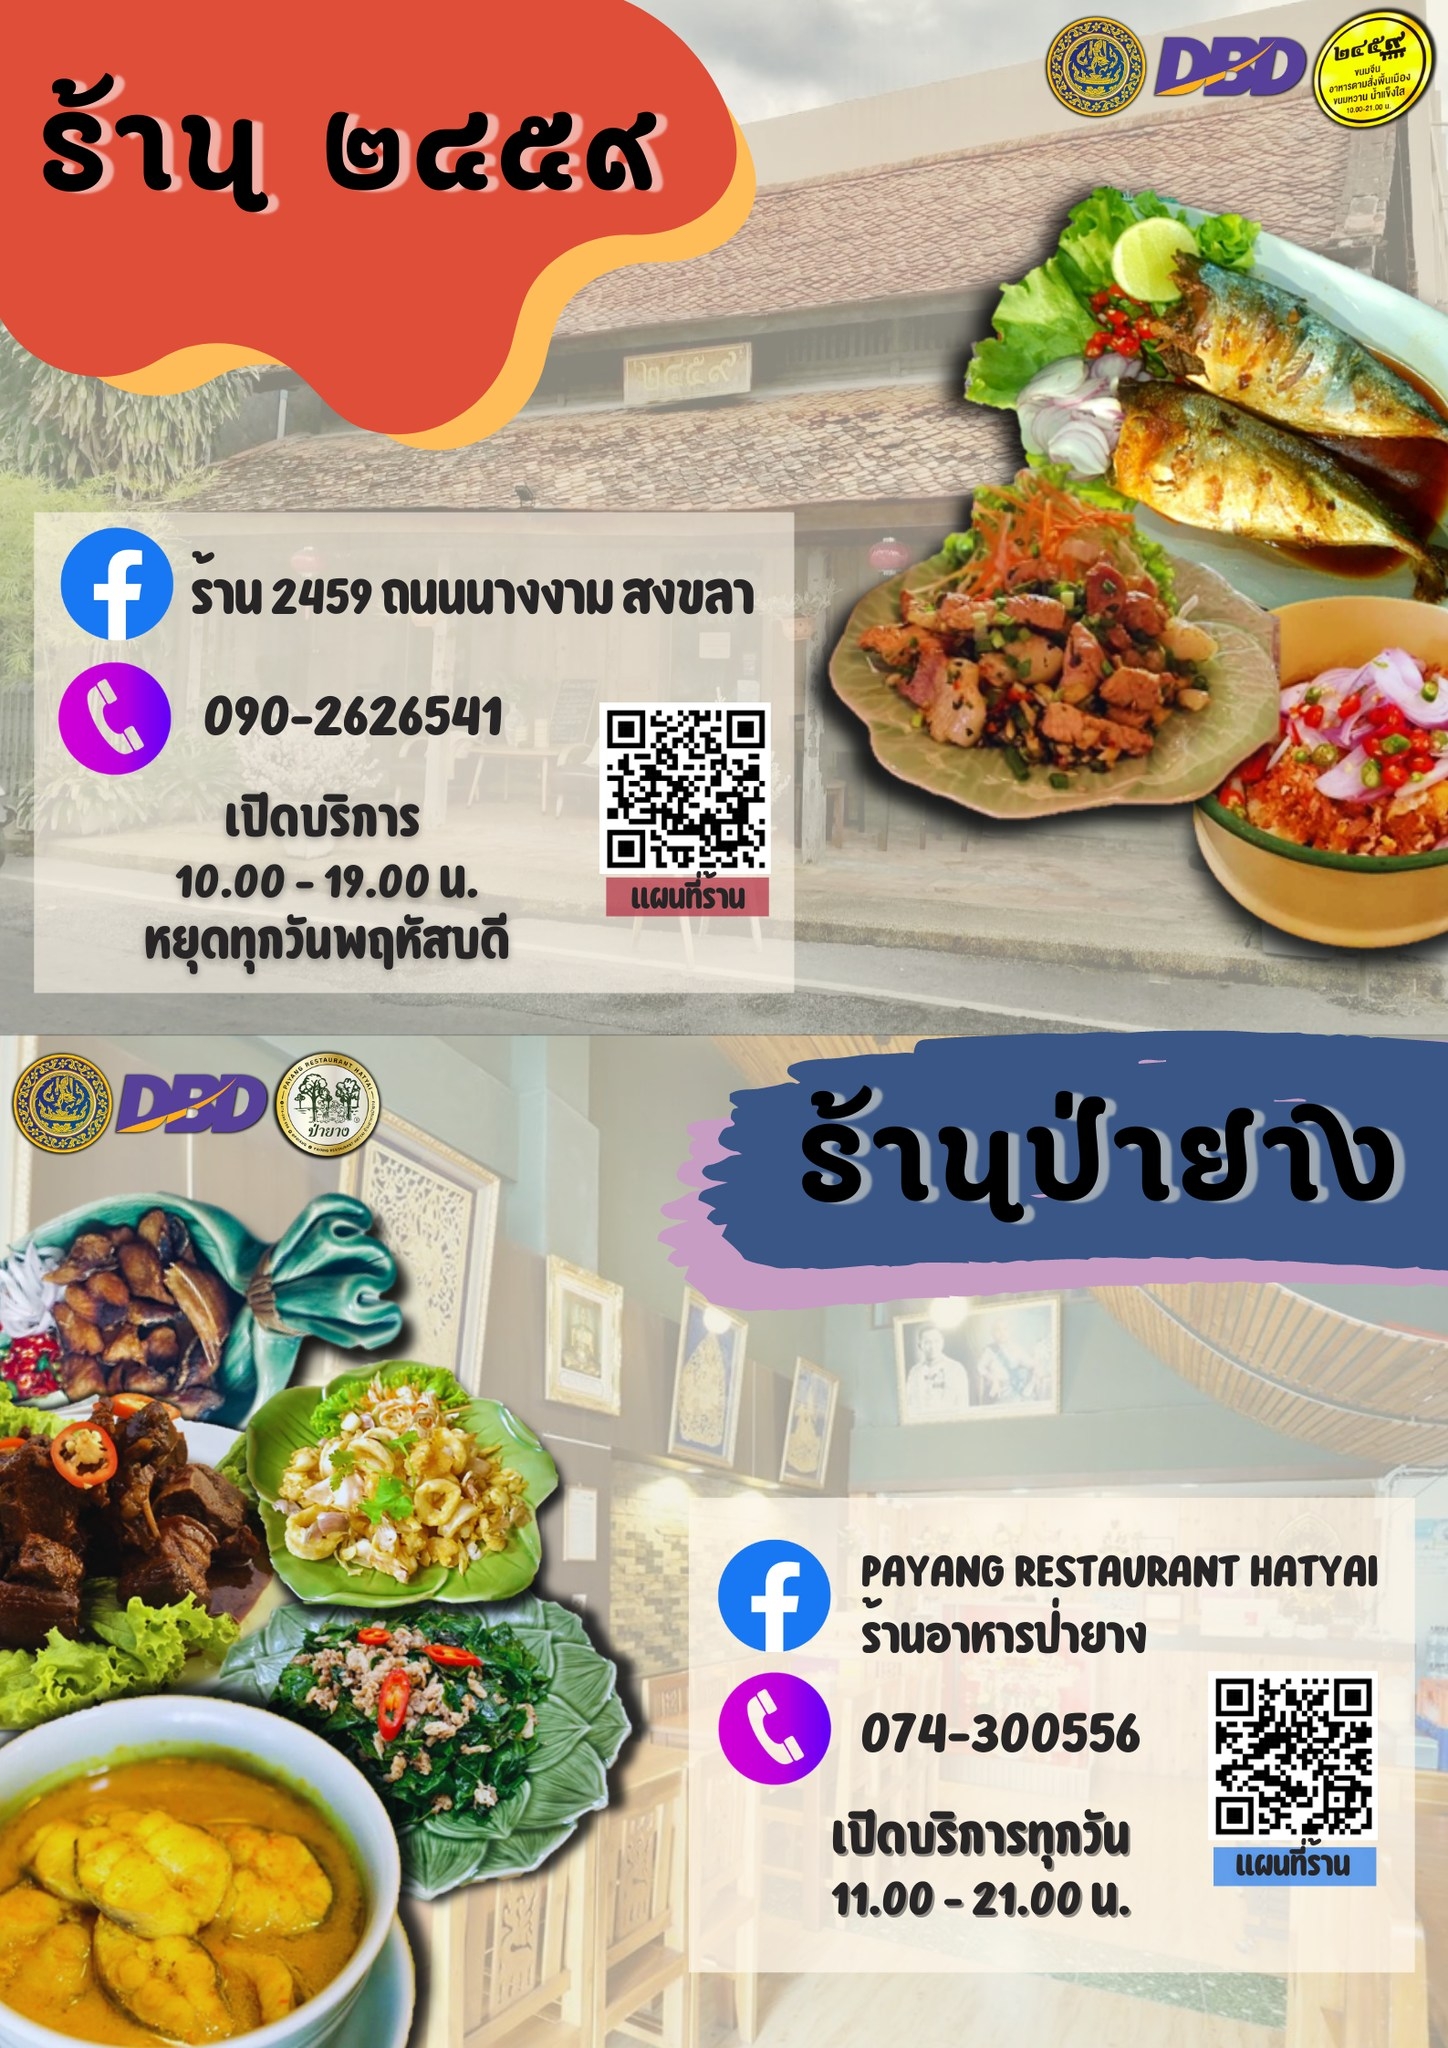 สำนักงานพาณิชย์จังหวัดสงขลา ประชาสัมพันธ์ร้านอาหาร Thai SELECT จังหวัดสงขลา จำนวน 11 ร้าน